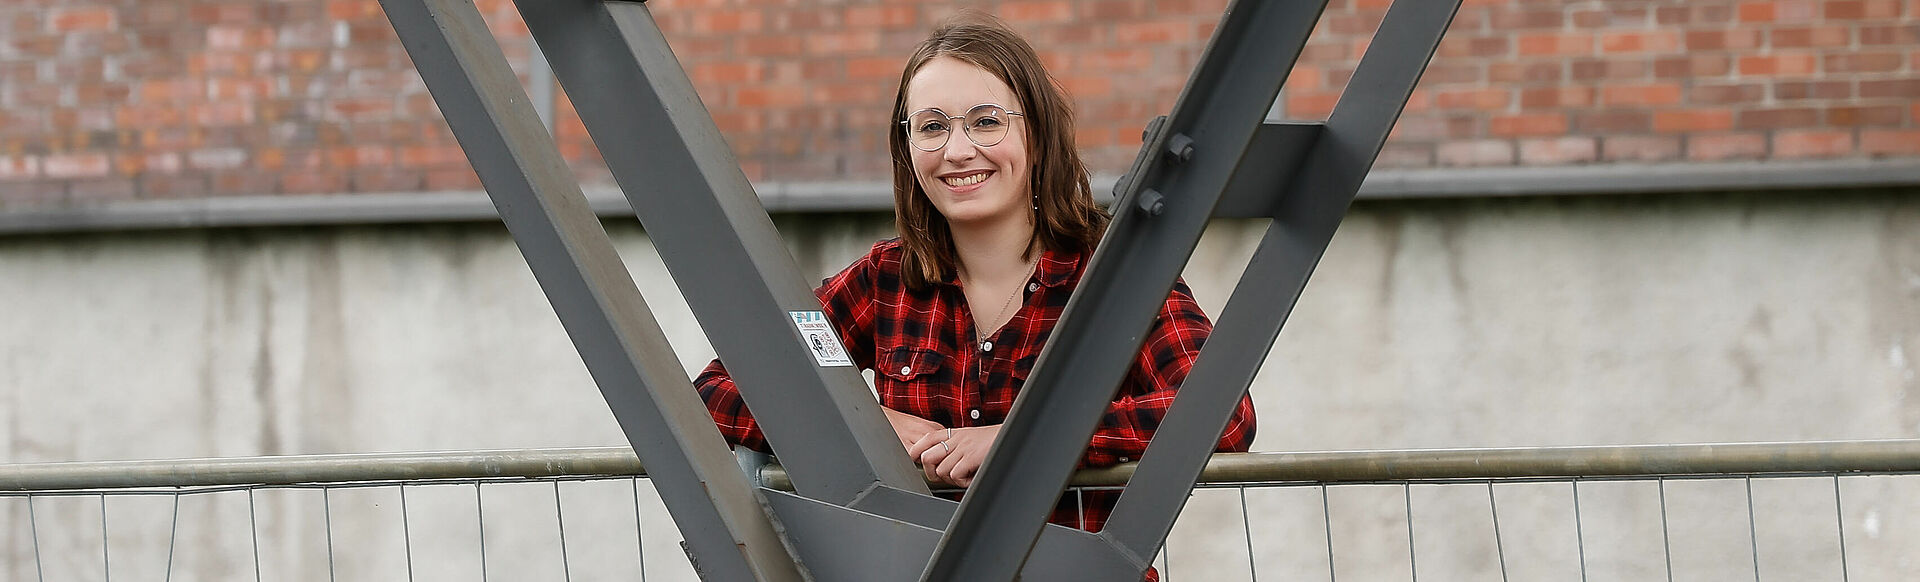 Eine Frau lächelt freundlich in die Kamera während sie sich an einem Stahlpfeiler anlehnt